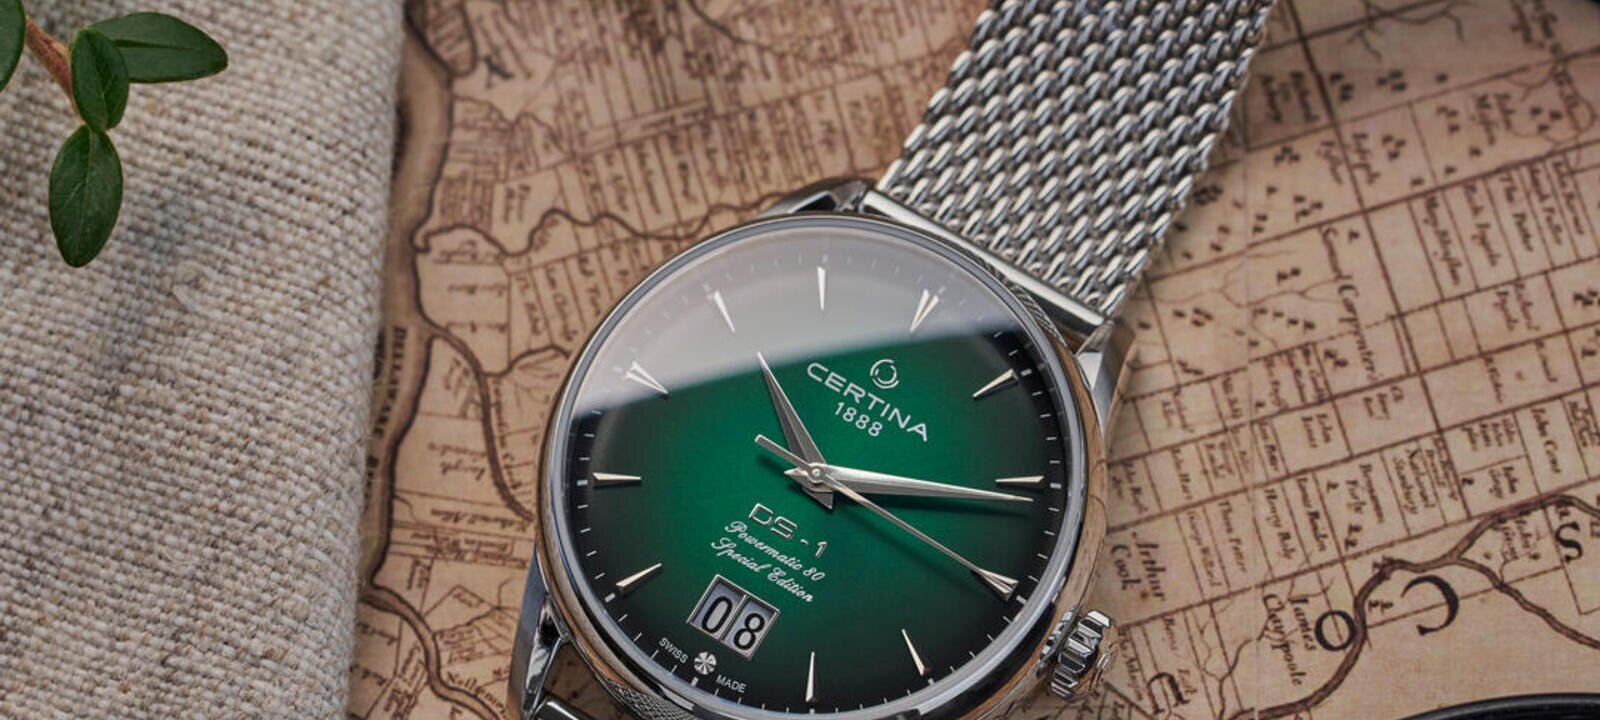 Ra mắt độc quyền đồng hồ The DS-1 Big Date kỉ niệm 60 năm tại Hamburg